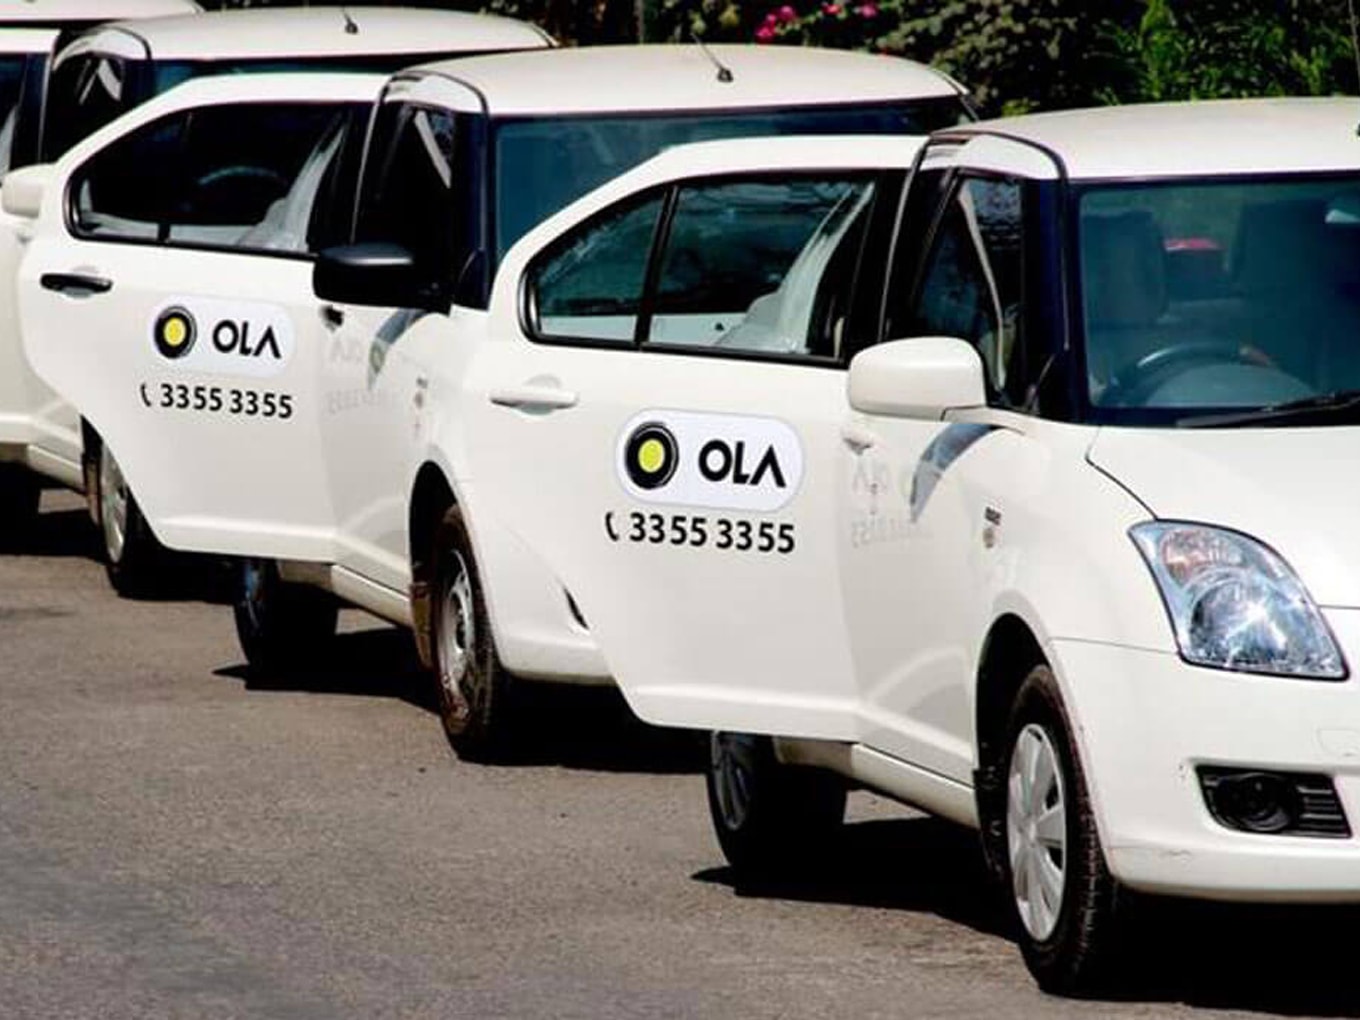 Karnataka Transport Dept Calls For Halt Of Pooling Services By Ola, Uber